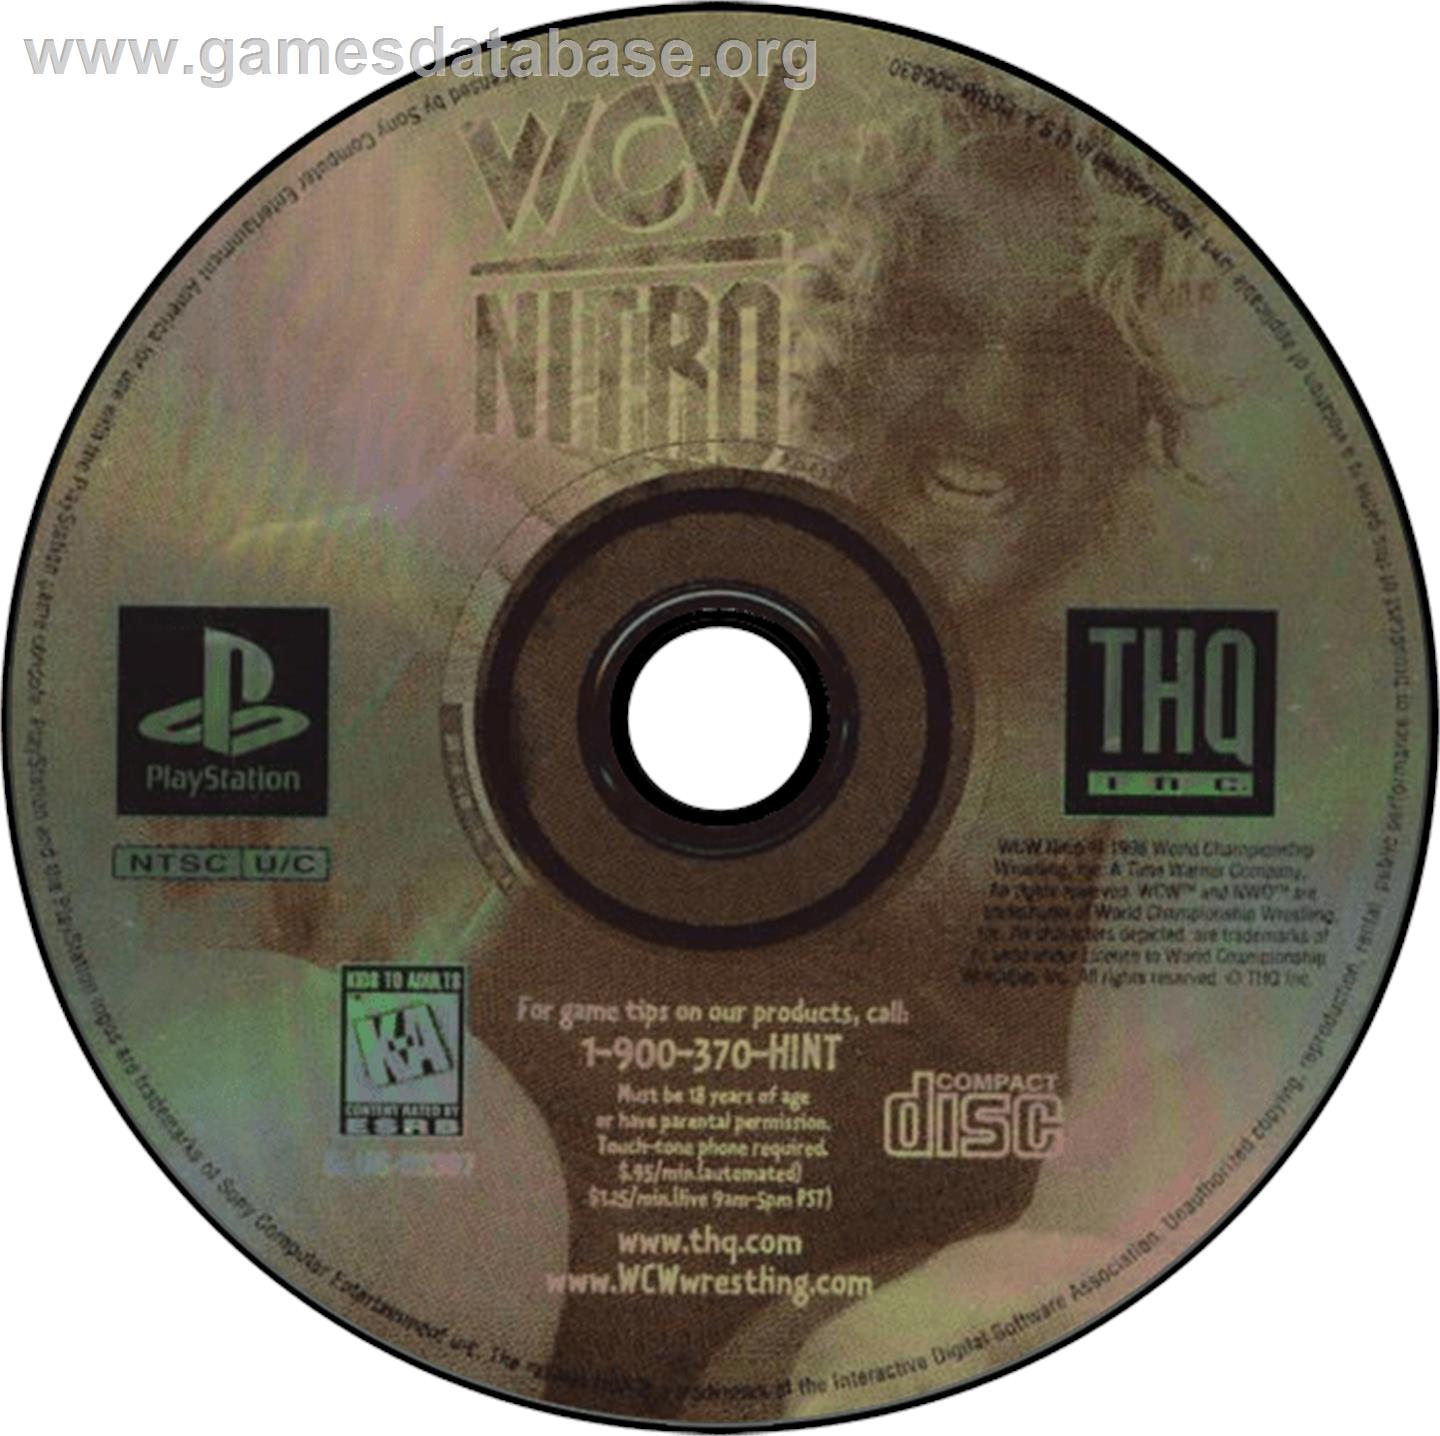 WCW Nitro - Sony Playstation - Artwork - Disc